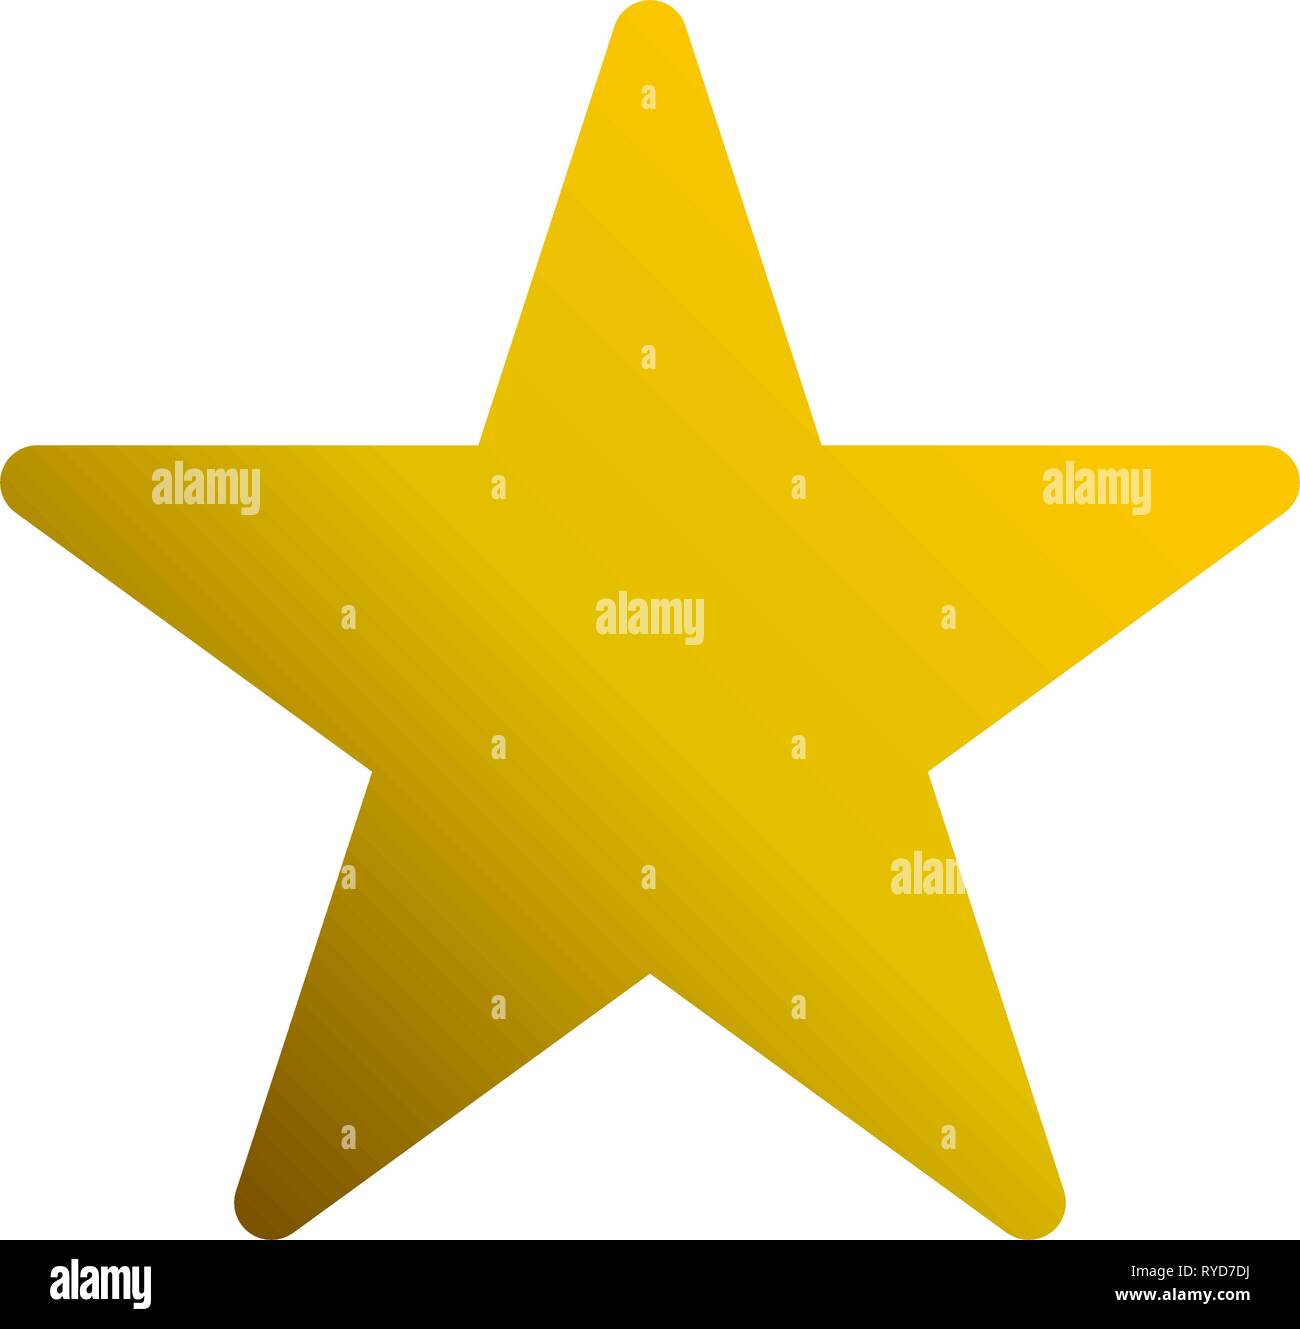 Star - icône gradient golden 5, arrondi souligné, isolé - vector illustration Illustration de Vecteur